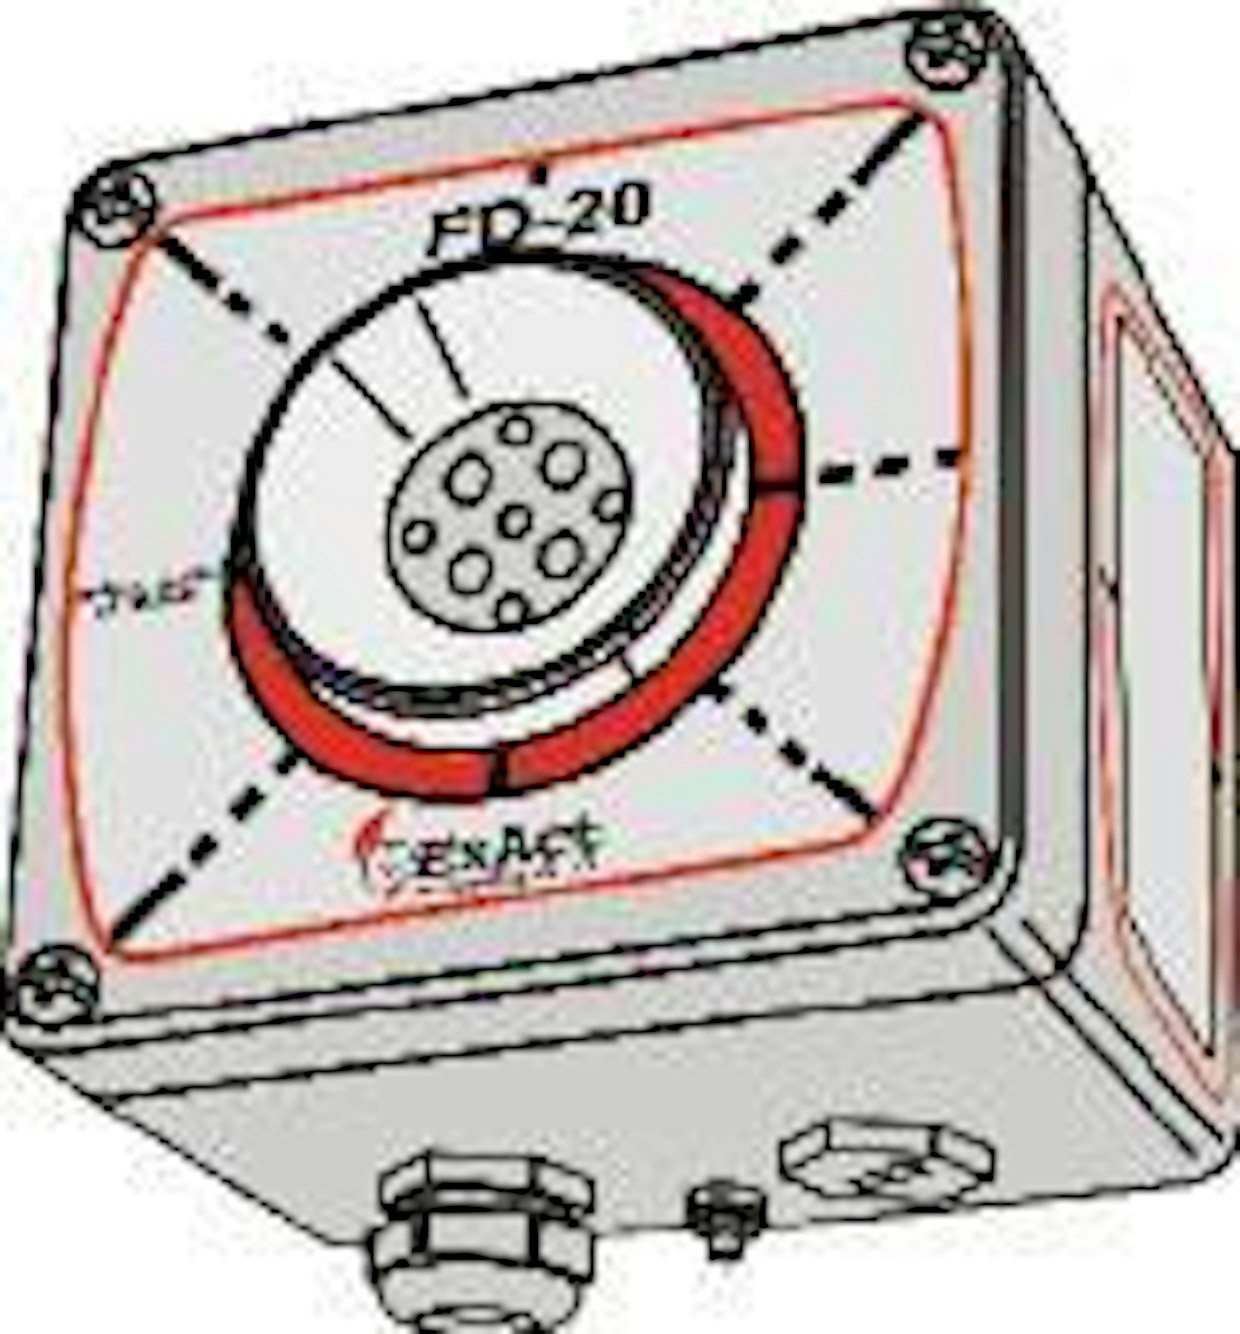 ExAct FD-20 ExAct FD-20 on optinen liekki-ilmaisin, joka soveltuu leimahtavien palojen ilmaisuun. Optinen ilmaisin havaitsee palolähteen lähettämän infrapunasäteilyn aallonpituusalueilla 220 ja 2800 nanometriä. Yhdellä ilmaisimella pystytään valvomaan maksimissaan 500 m2:n tilaa. ExAct FD-20 voidaan liittää joko konventionaaliseen ilmaisinsilmukkaan tai osoitteelliseen paloilmoitinkeskukseen. Myynti: Mikro-Pulssi Oy  (www.mikro-pulssi.fi)